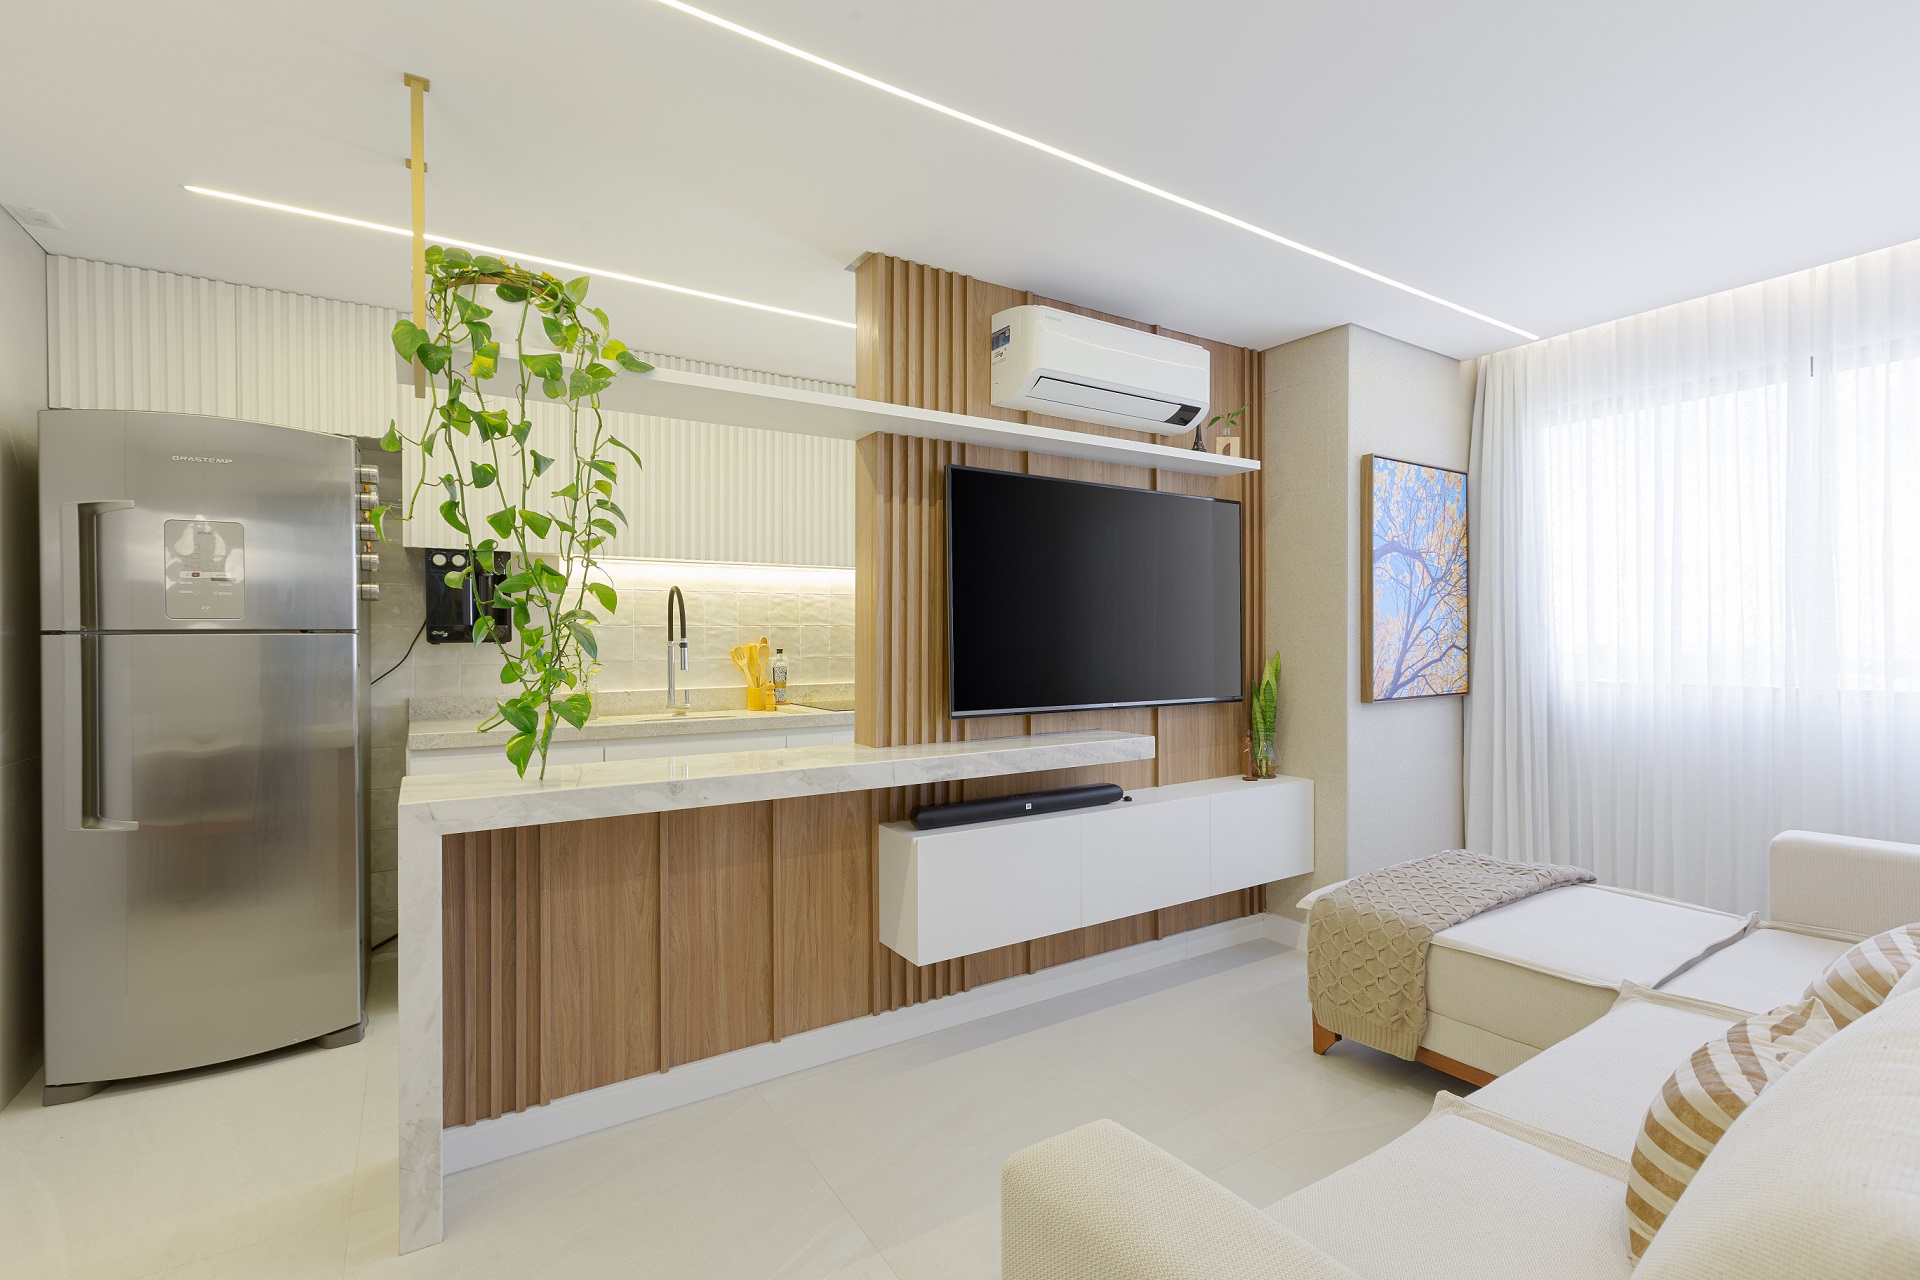 Sala e cozinha integradas em apartamento pequeno em estilo minimalista